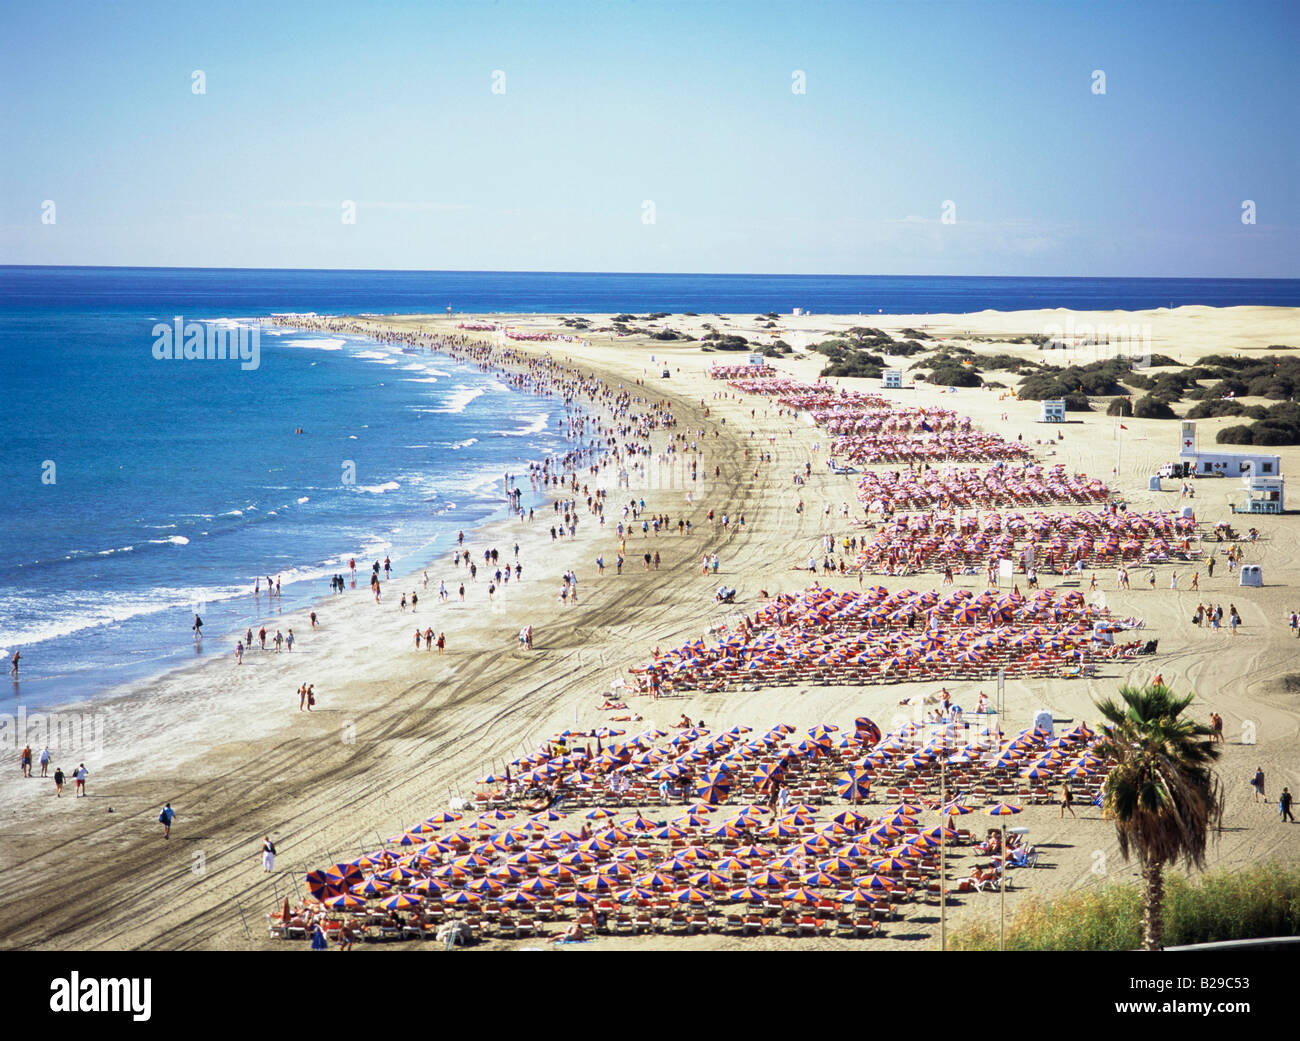 GRAN CANARIA Spanien Playa del Ingles Datum 05 06 2008 Ref ZB670 114630 0026 obligatorische CREDIT Welt Bilder Photoshot Stockfoto